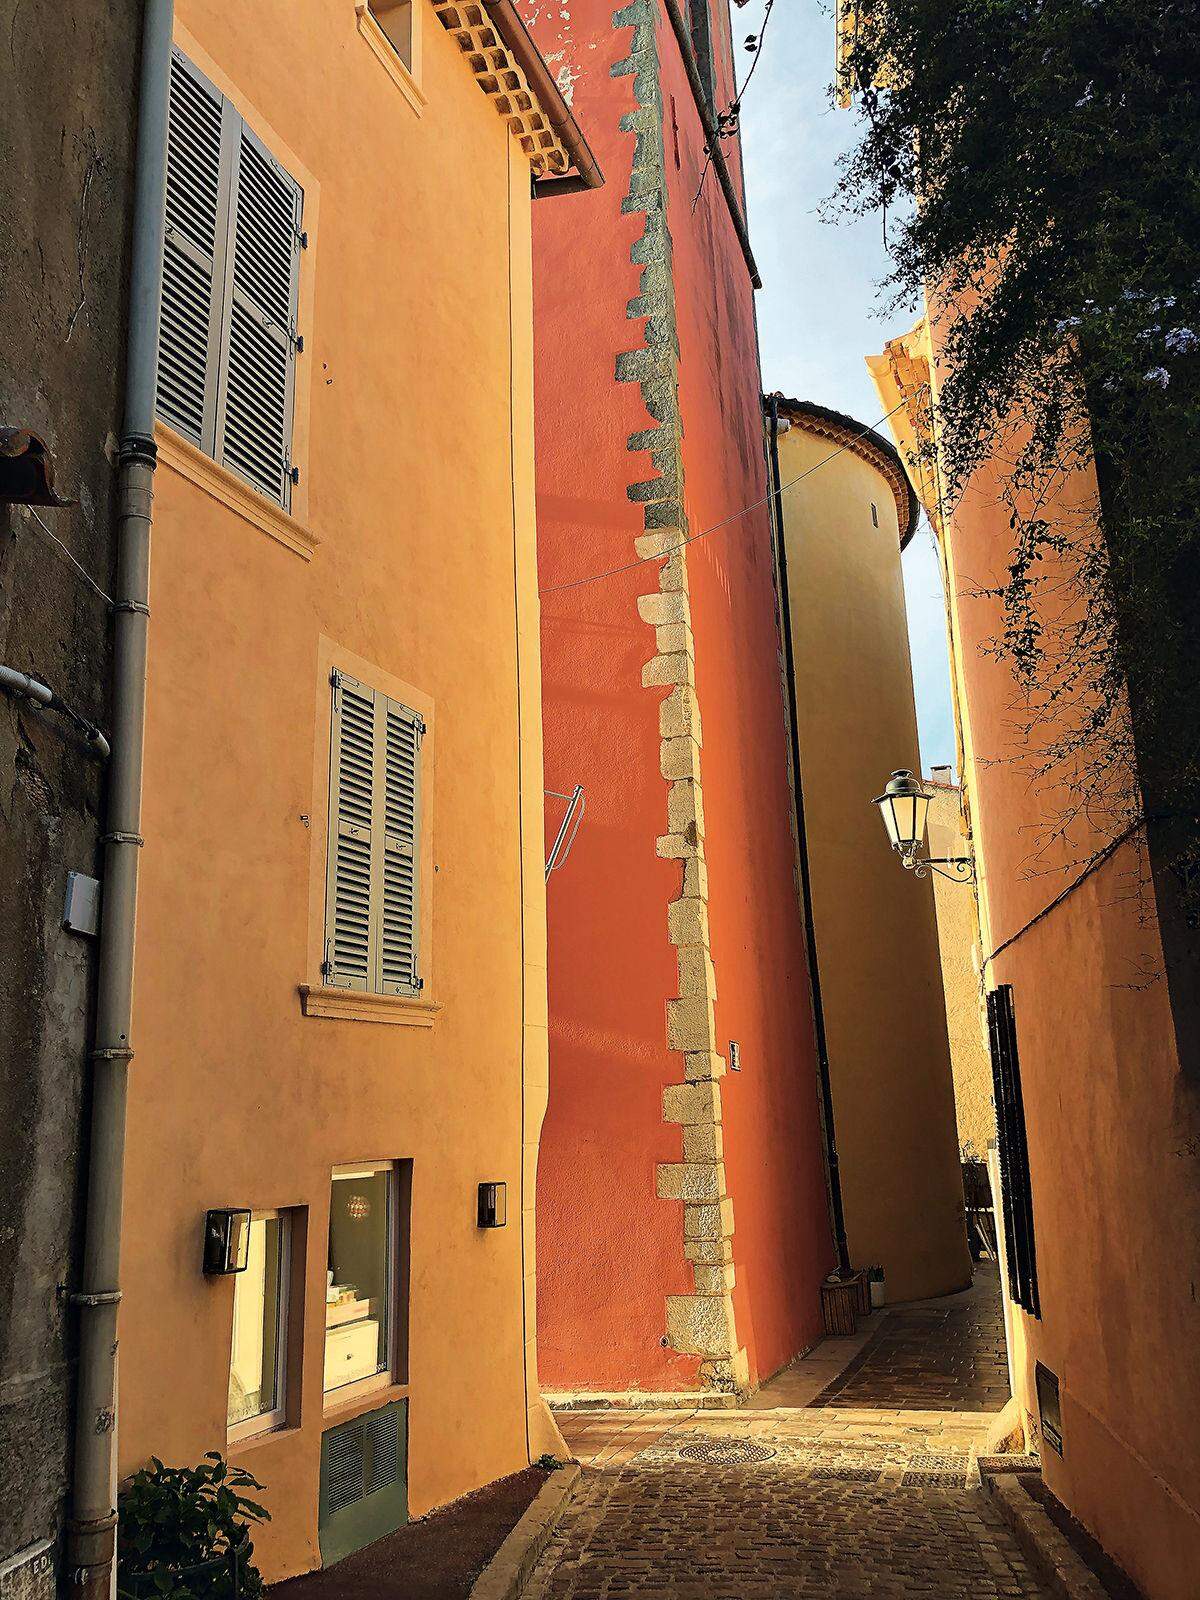 Gebäude in den typischen warmen Farben Ocker, Gelb und Pink. Die Farben von St. Tropez. 